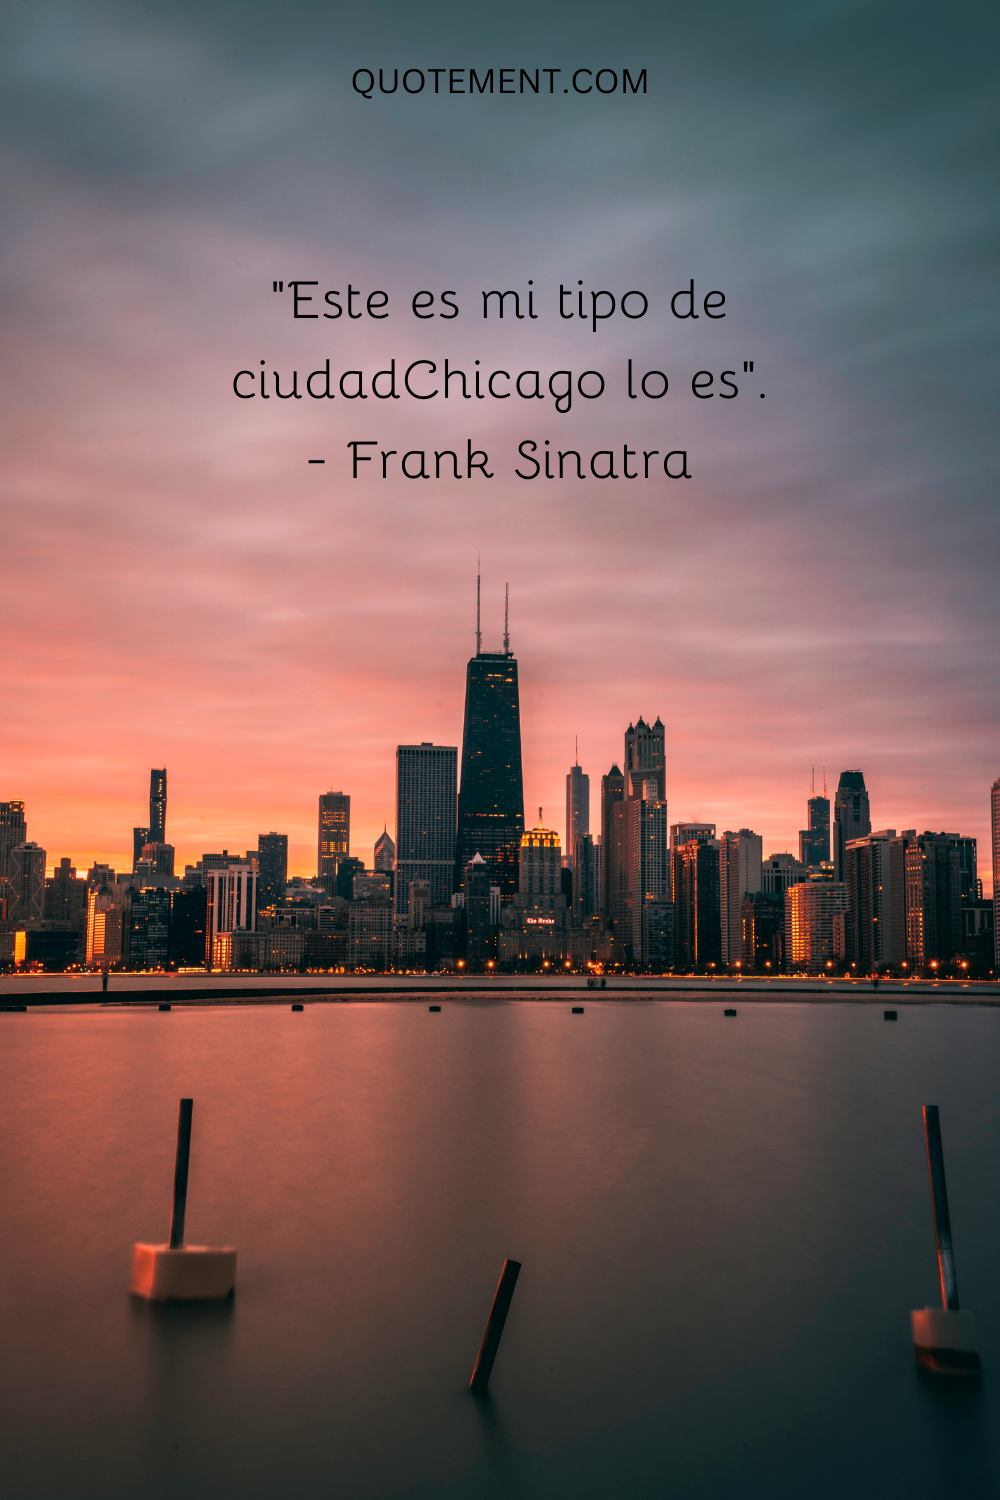 "Chicago es mi tipo de ciudad". - Frank Sinatra